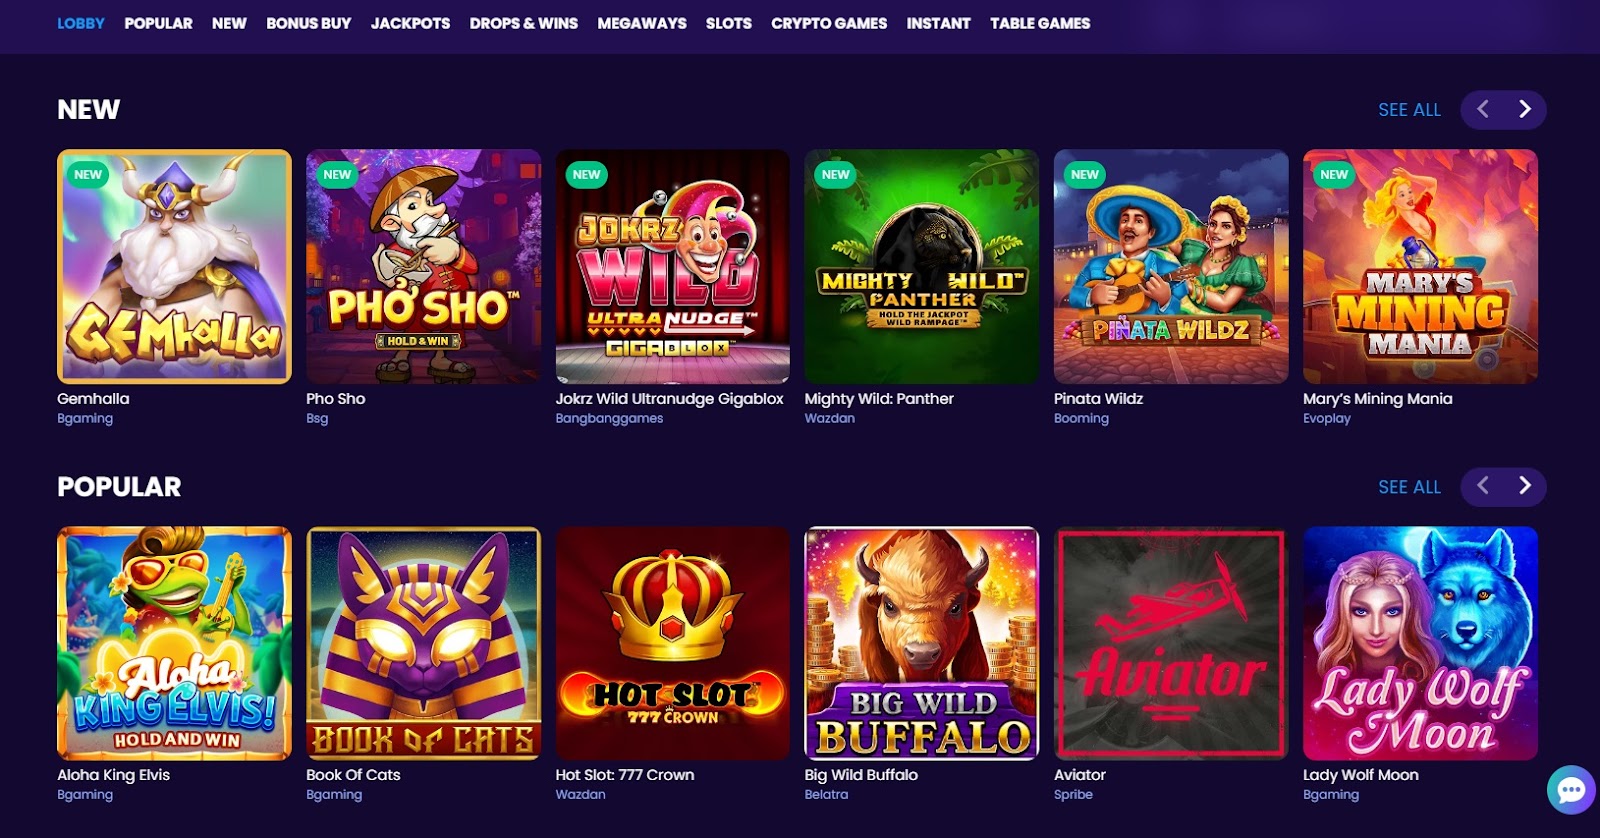 BitDreams Casino games
